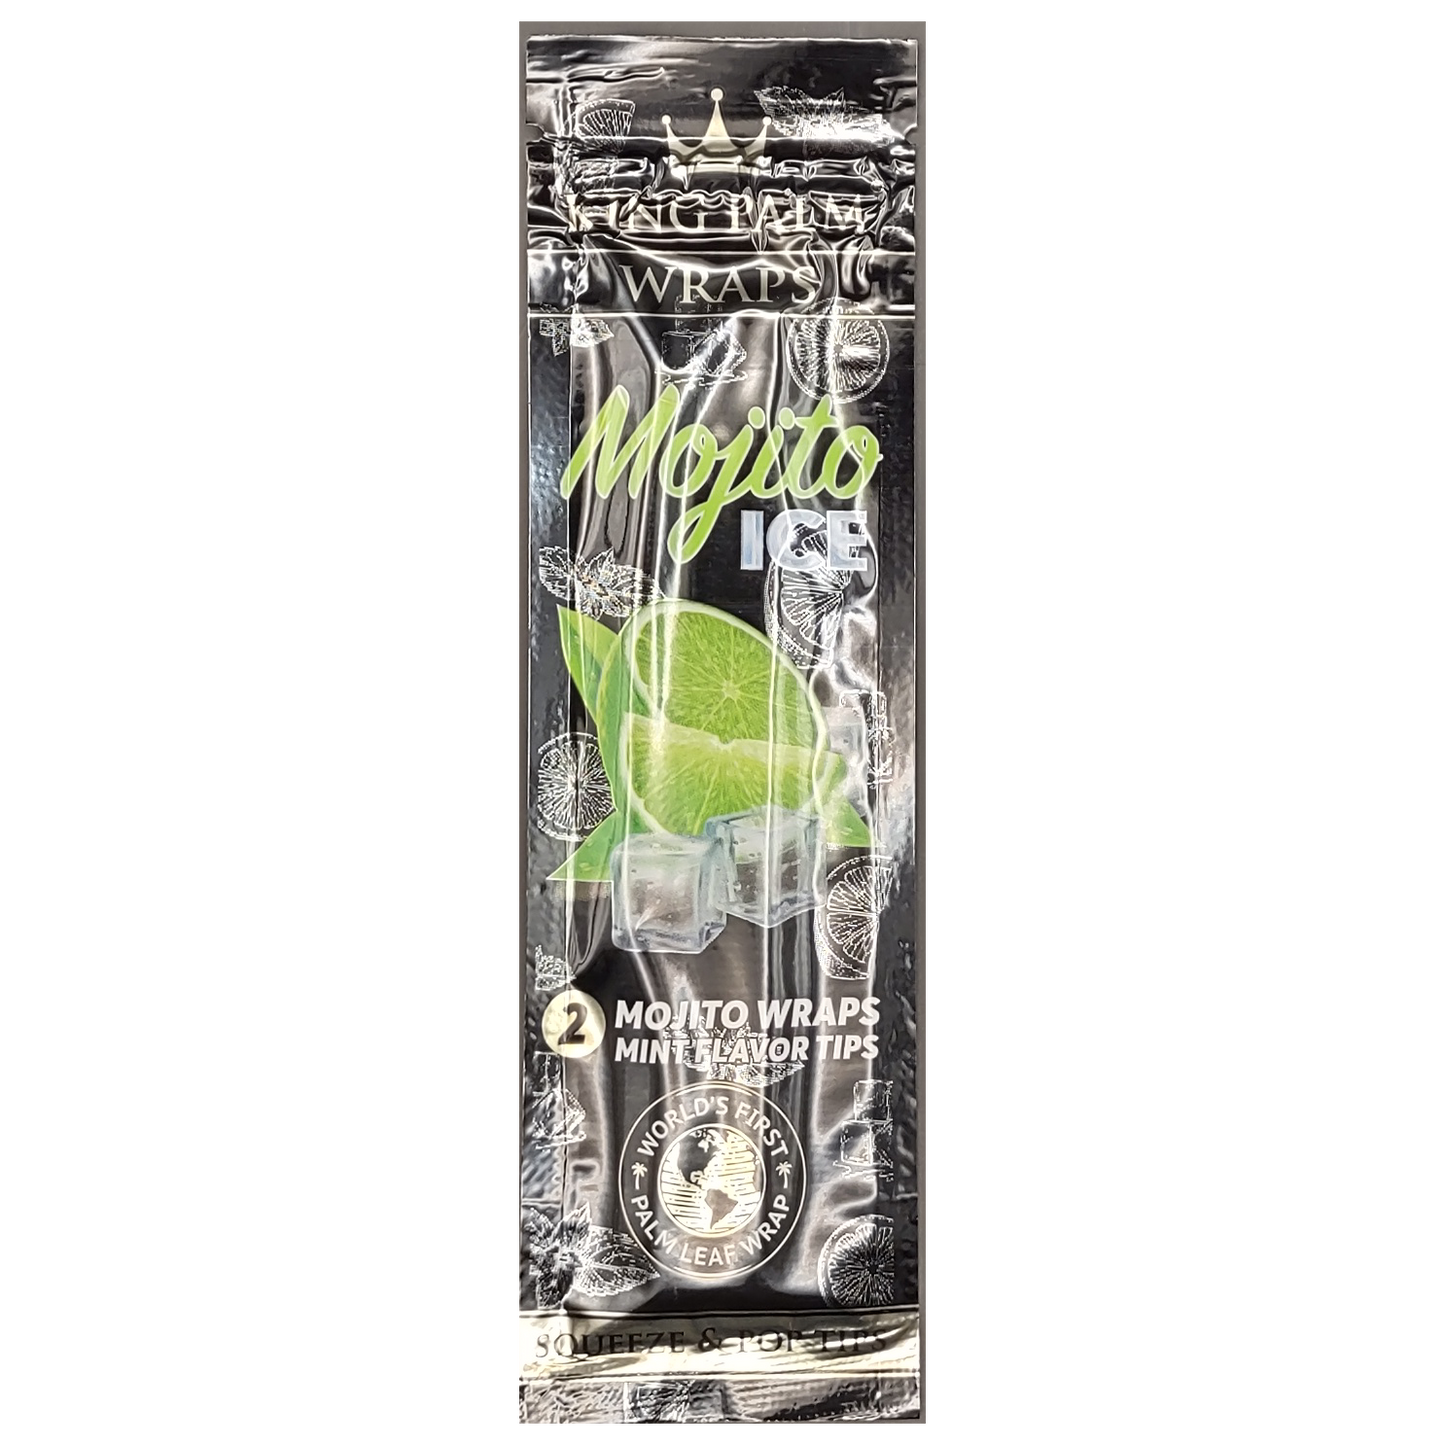 King Palm Wraps - Mojito Ice